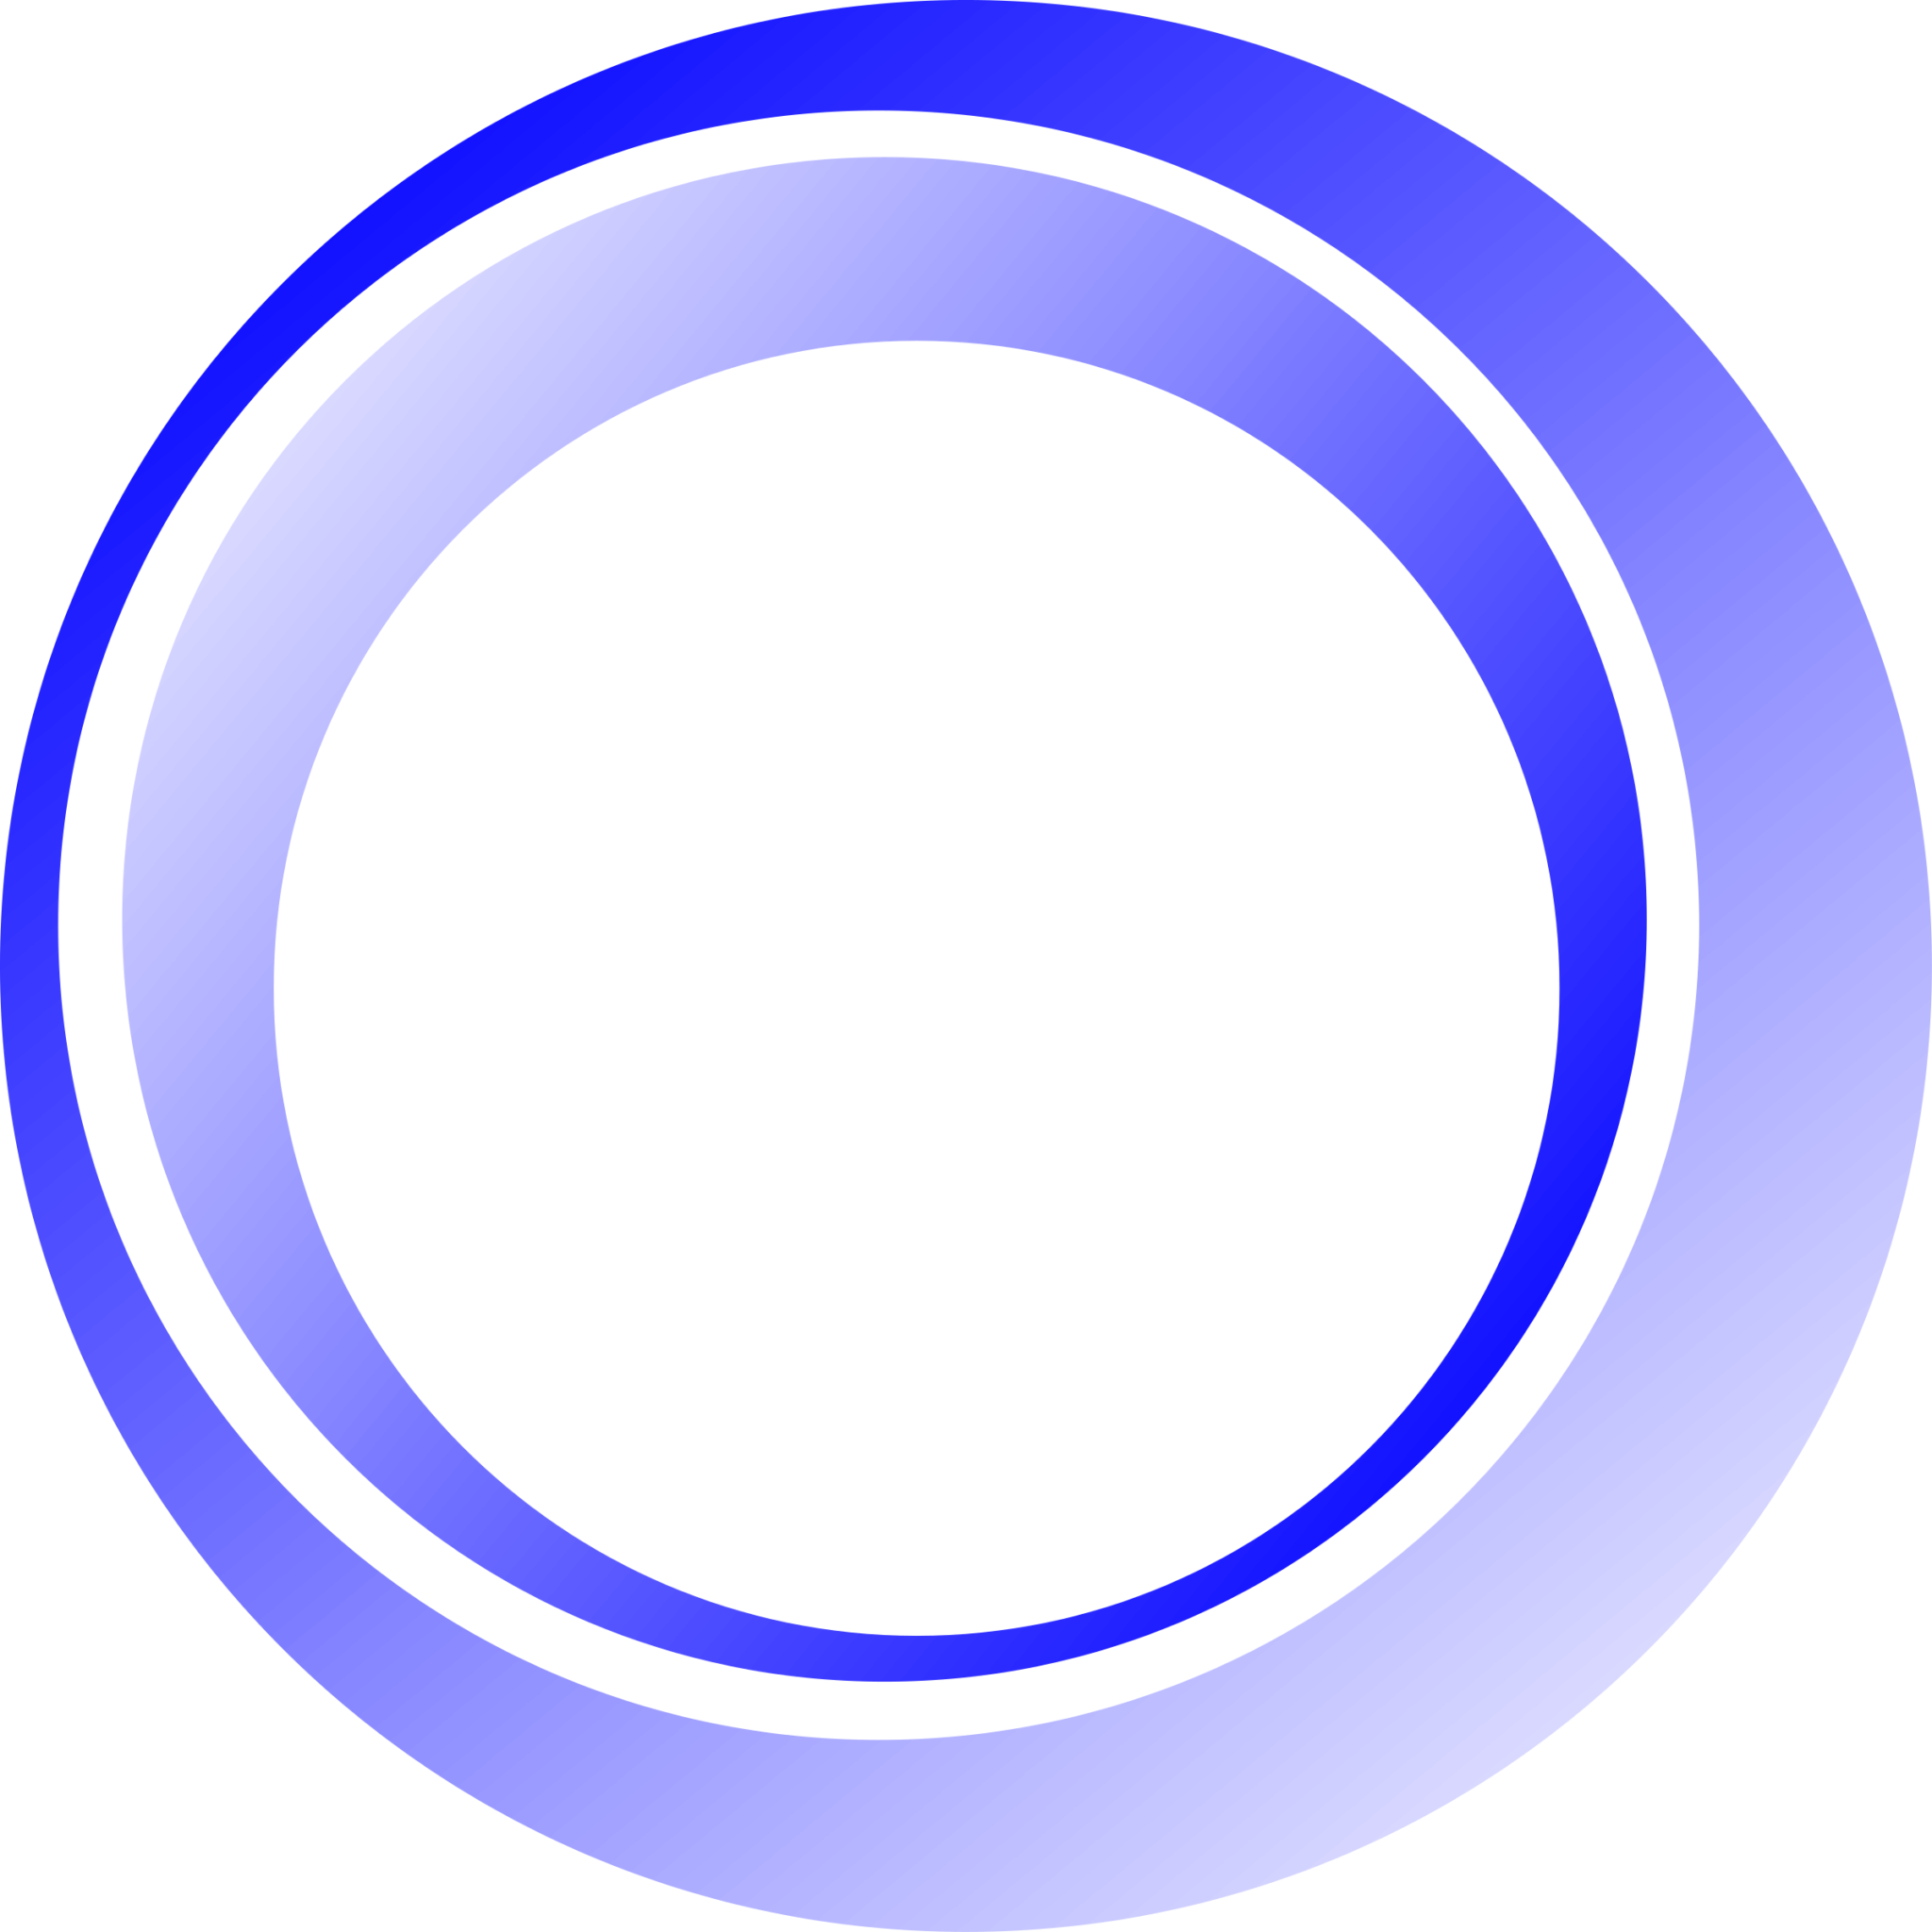 Фон для логотипа png. Красивый круг. Круг для логотипа. Круг для фотошопа. Красивый круг для логотипа.